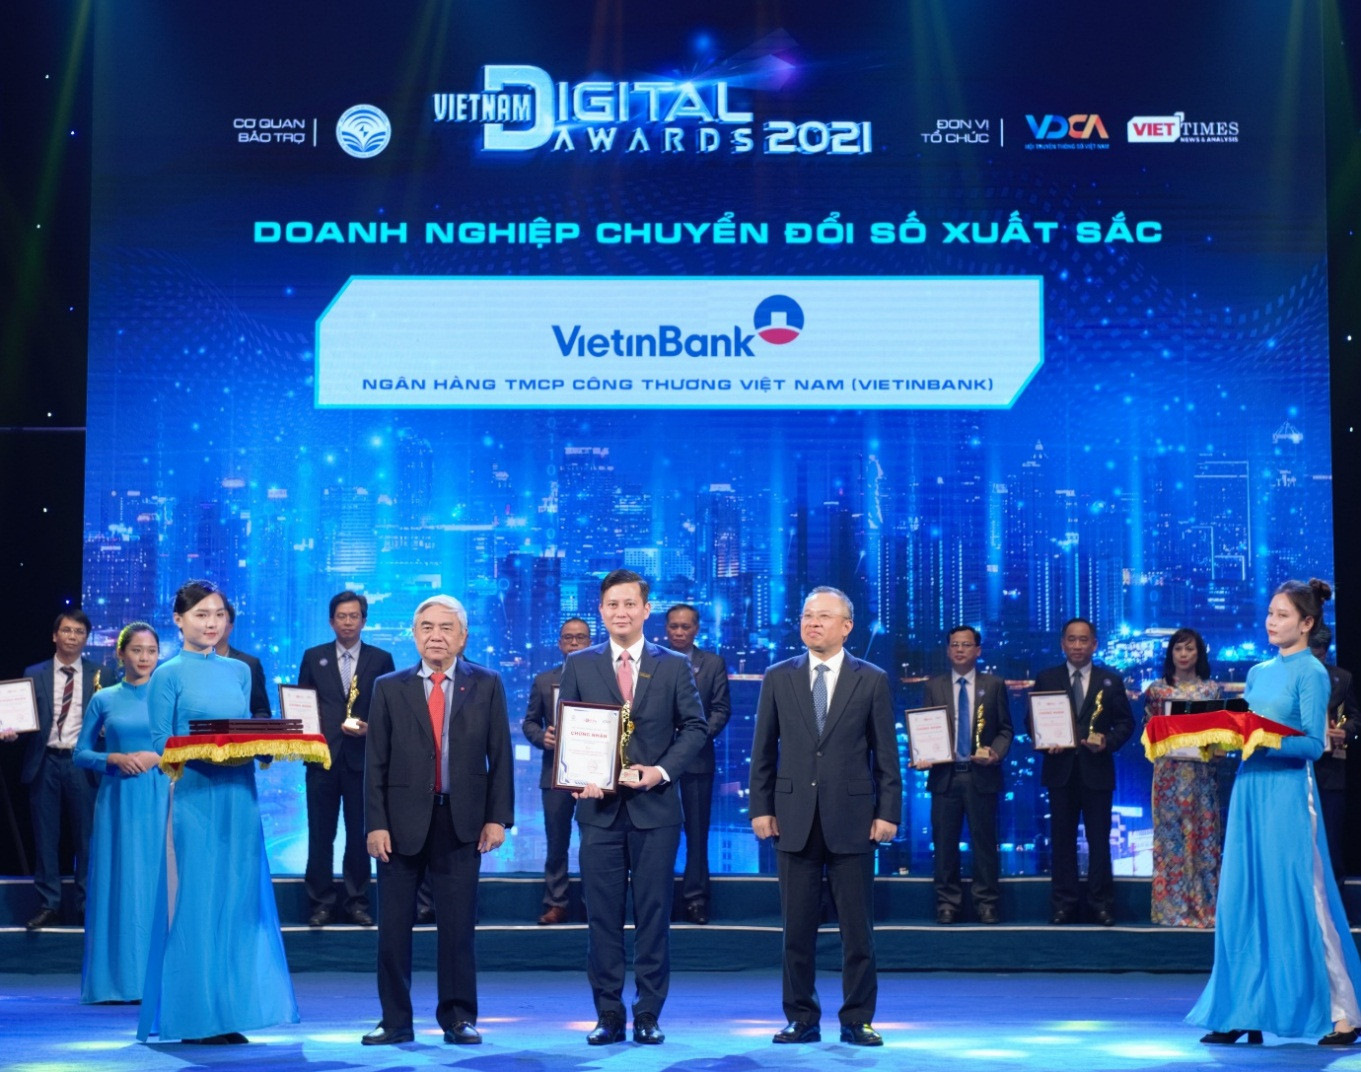 Ông Trần Công Quỳnh Lân - Phó Tổng Giám đốc kiêm Giám đốc Chuyển đổi số đại diện VietinBank nhận giải thưởng Doanh nghiệp chuyển đổi số xuất sắc Việt Nam năm 2021.